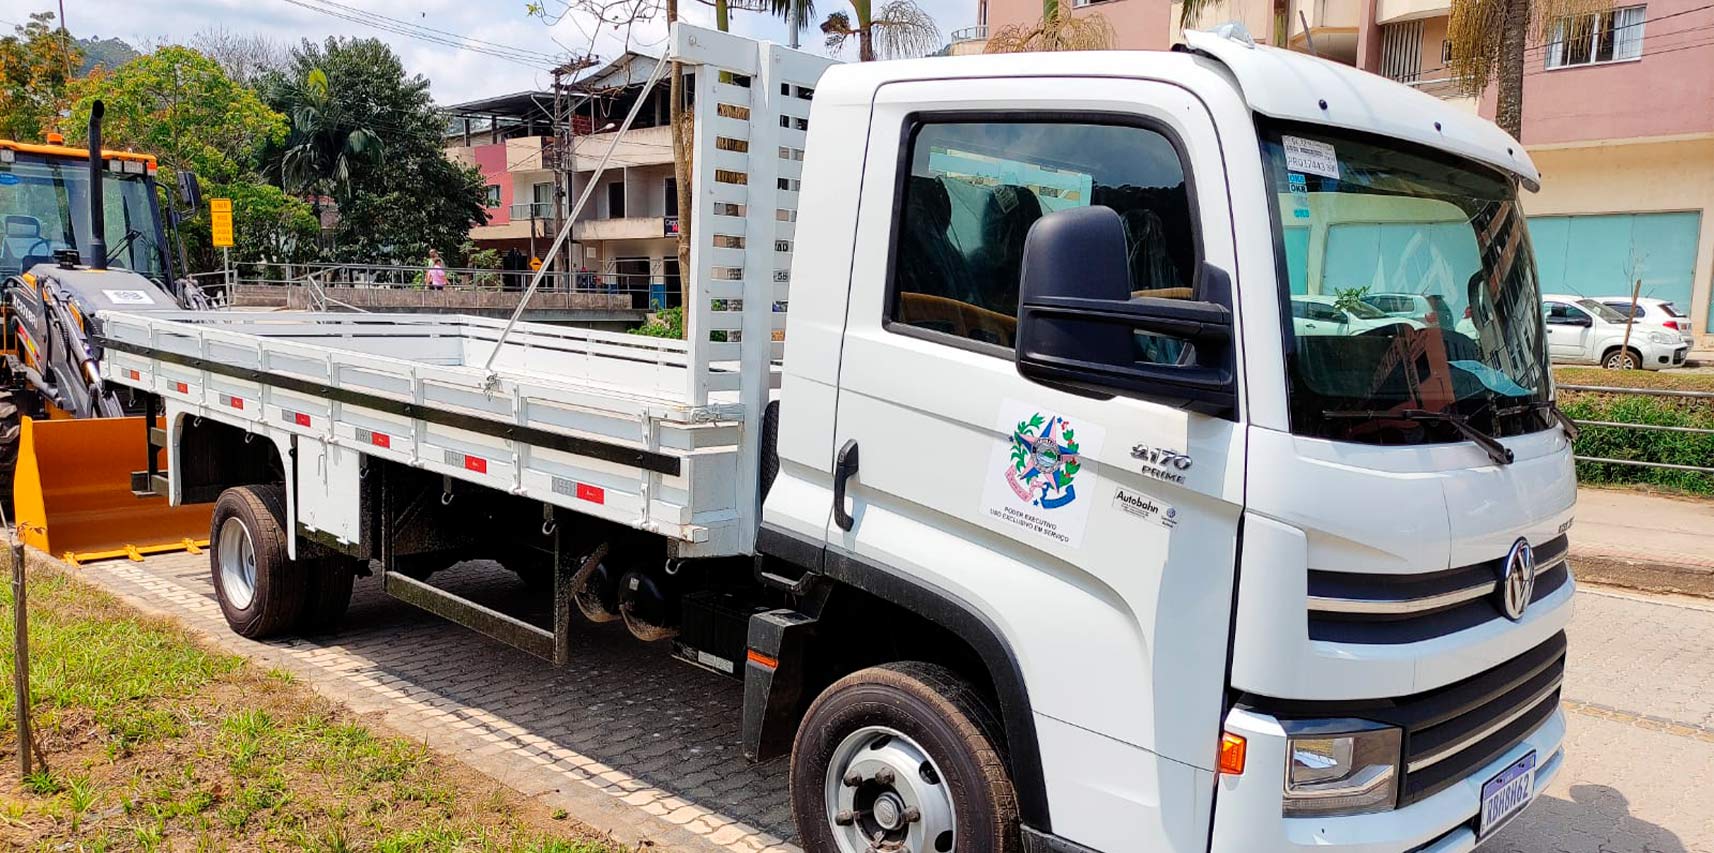 Prefeitura de Vargem Alta entrega caminhão ao Sindicato Rural nesta quinta-feira (22)